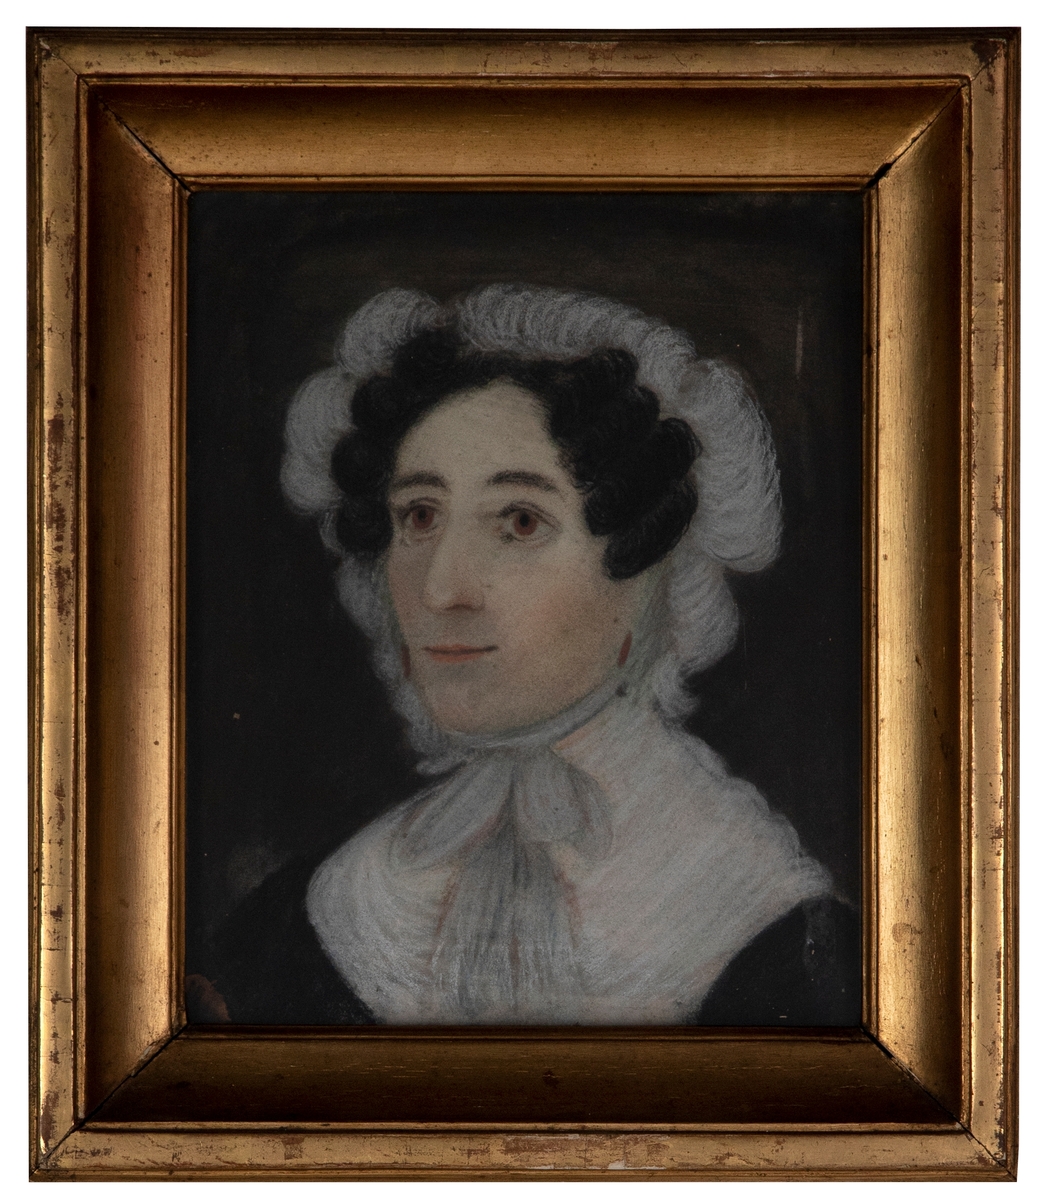 Portrett av en kvinne med mørkt oppsatt hår og brune øyne. Kvinnen er iført en innendørs hodekappe i hvit med knyting i halsen og en hvit krage over en svart kjole.